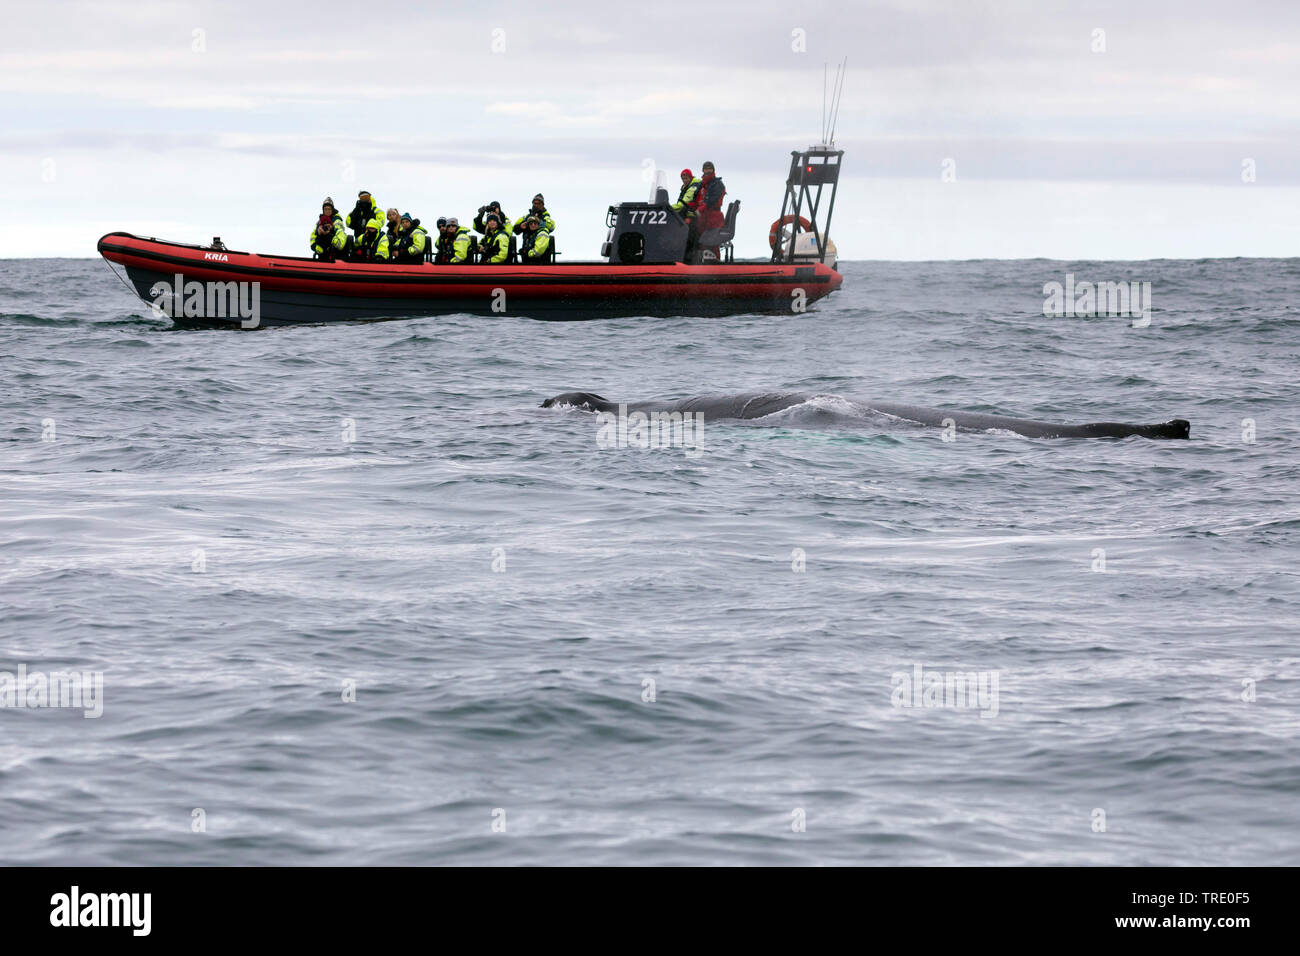 La ballena jorobada (Megaptera novaeangliae), turistas en un bote de goma observando una ballena, Islandia Foto de stock